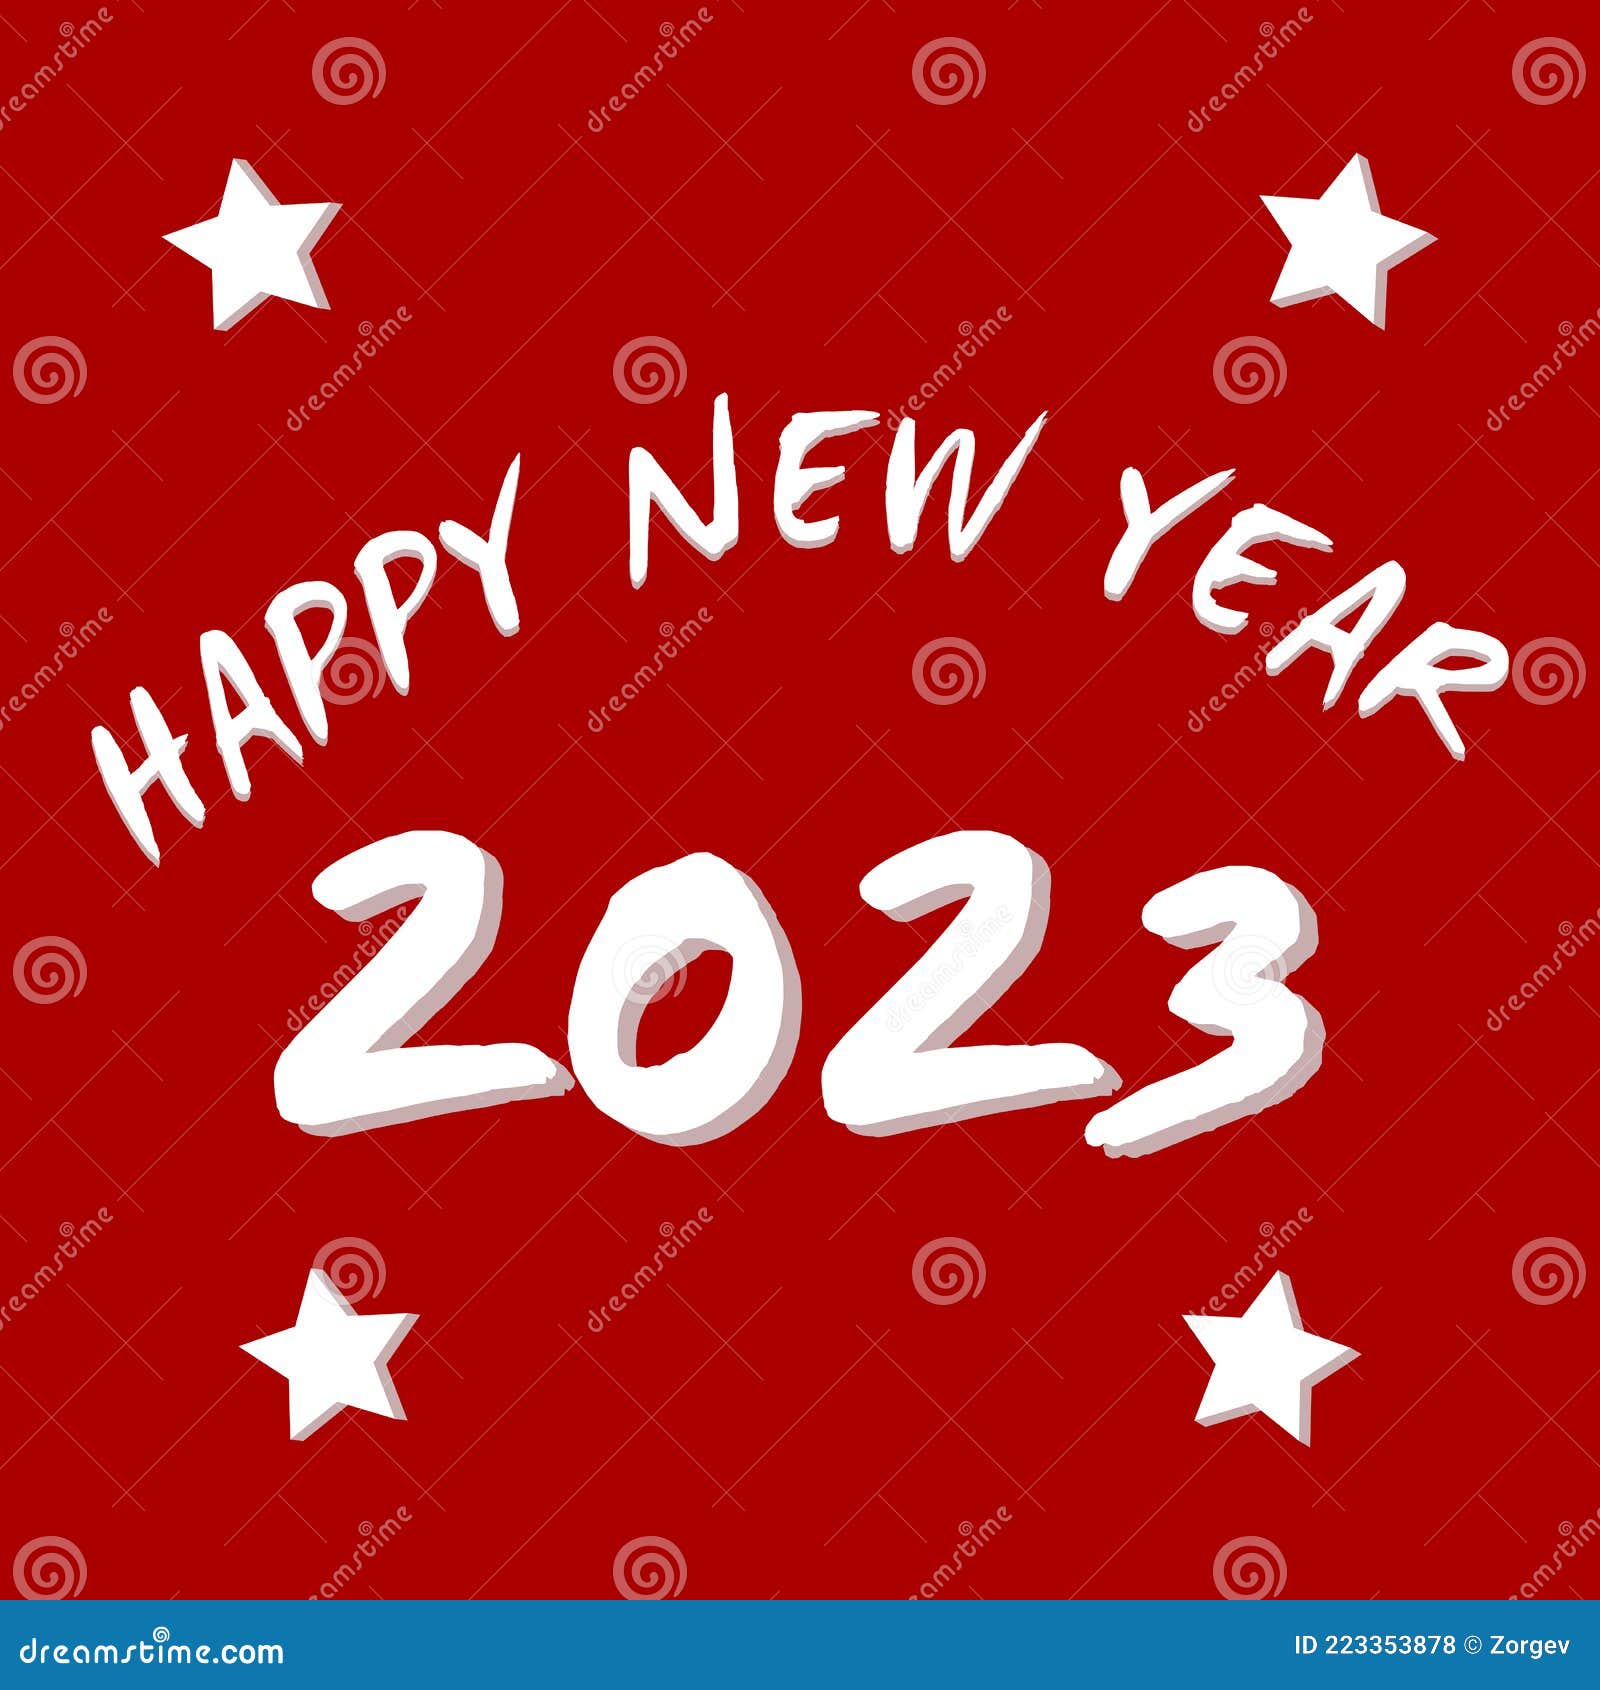 Chào đón năm mới 2024 với nhiều niềm vui và hạnh phúc. Hãy cùng xem hình ảnh đầy màu sắc về một năm mới đầy hy vọng và thành công!